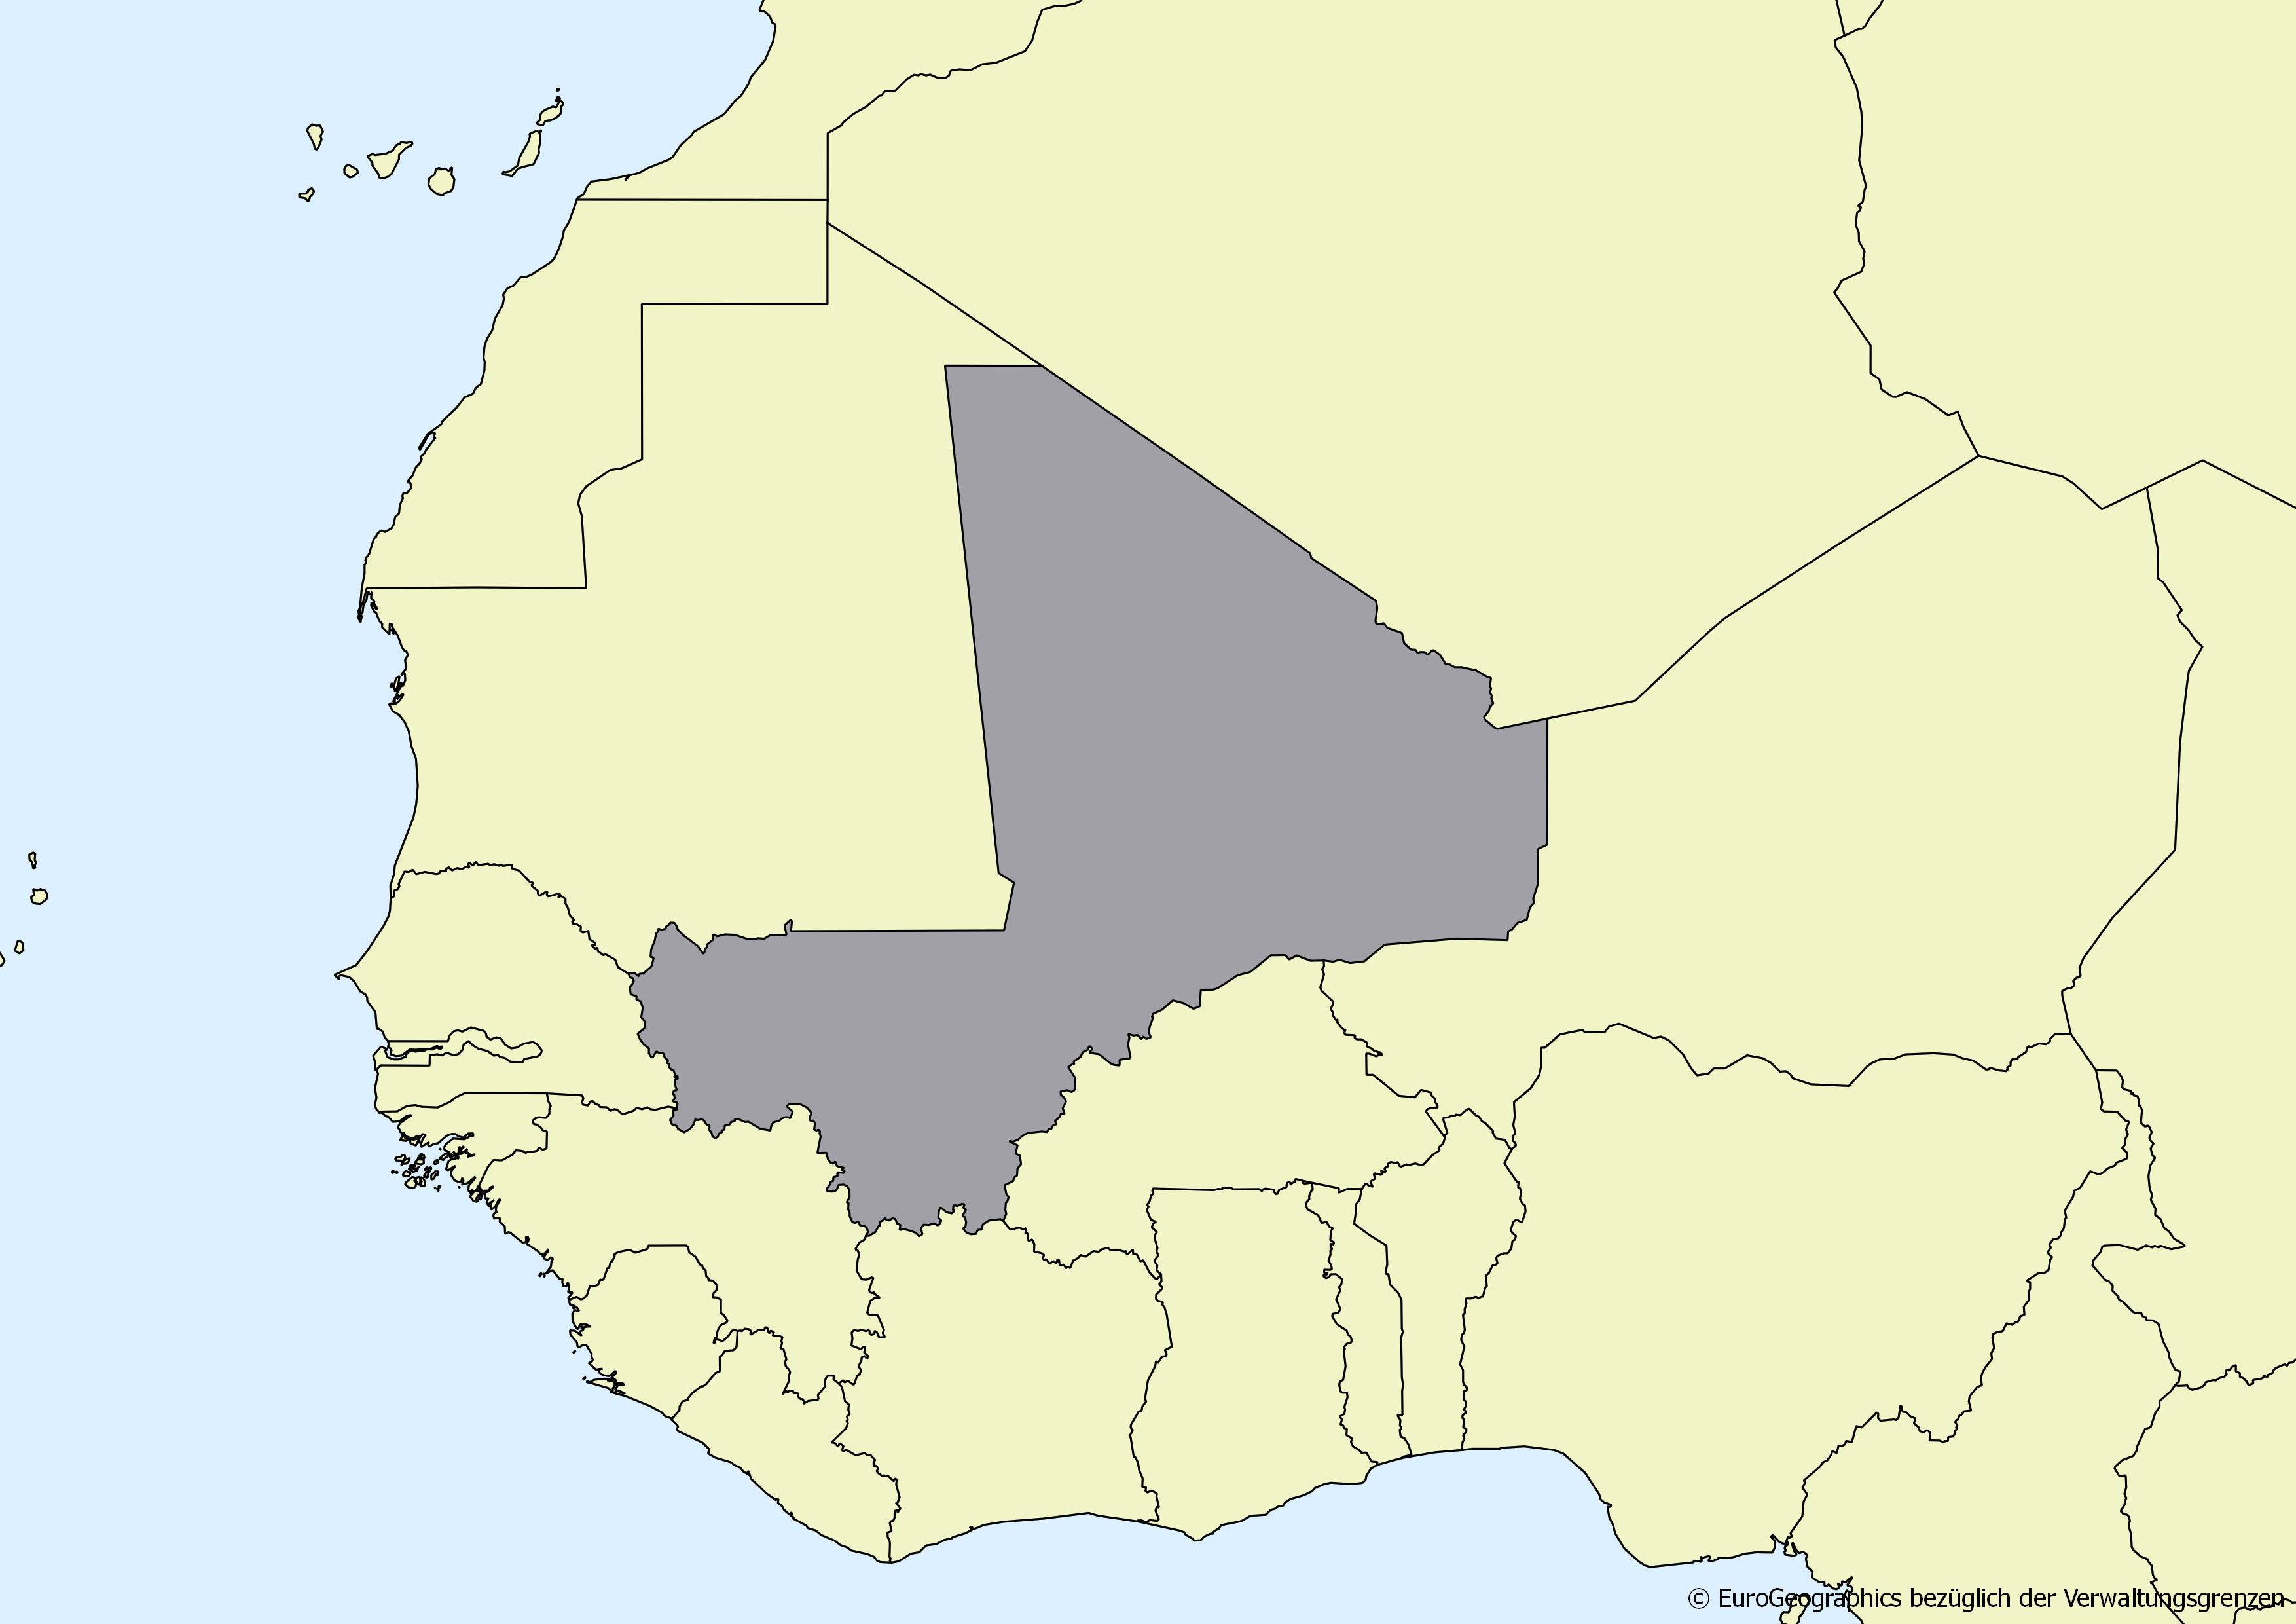 Ausschnitt einer Karte des afrikanischen Kontinents mit Ländergrenzen. Im Zentrum steht Mali grau hervorgehoben